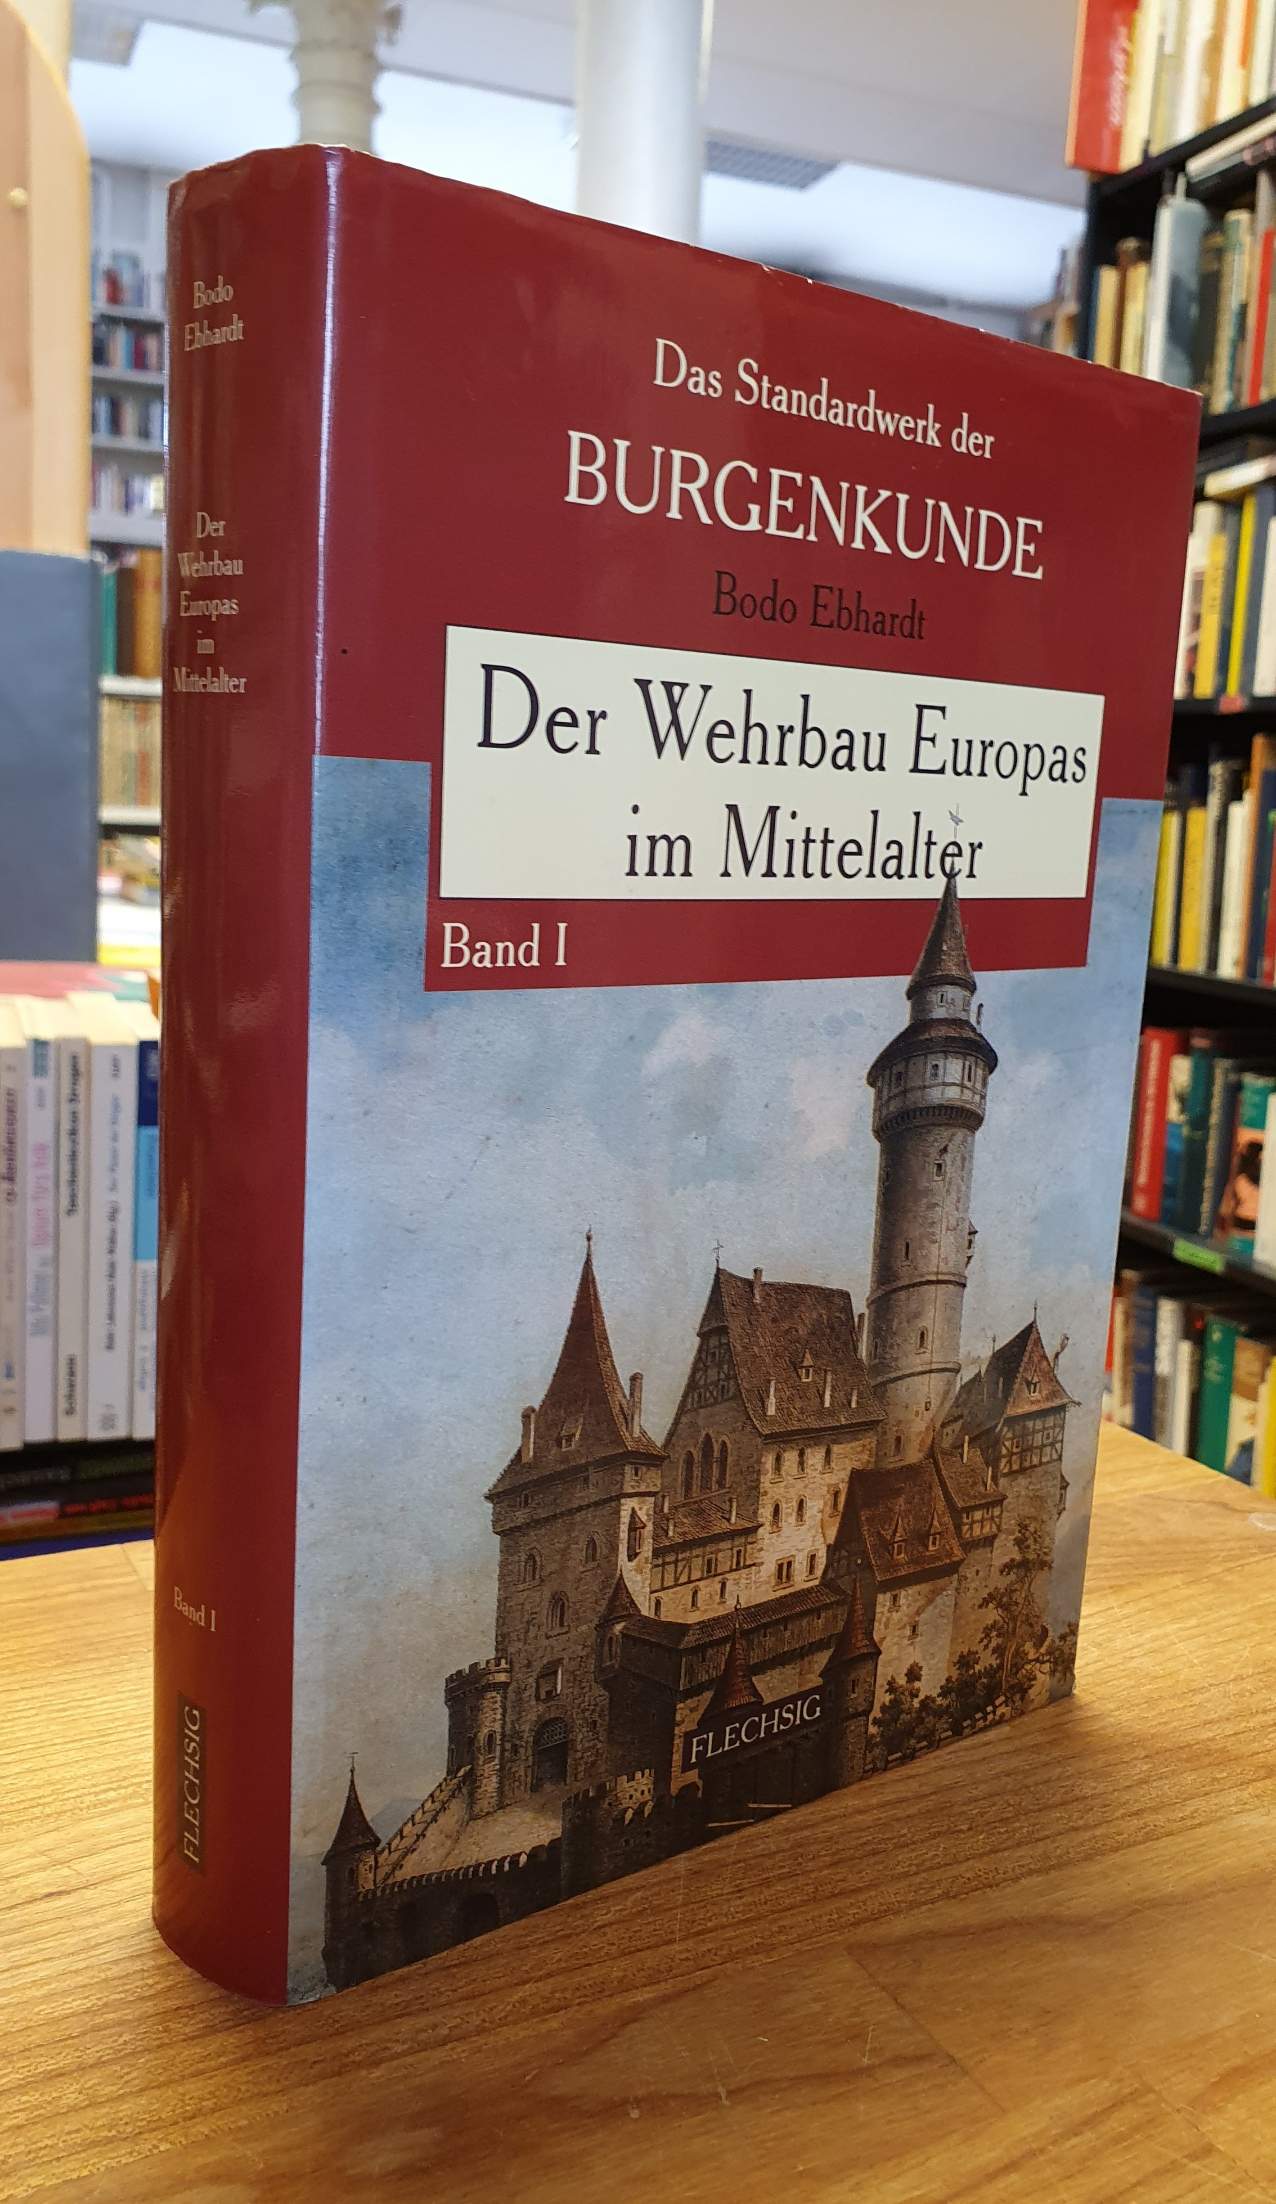 Ebhardt, Der Wehrbau Europas im Mittelalter – Band 1,